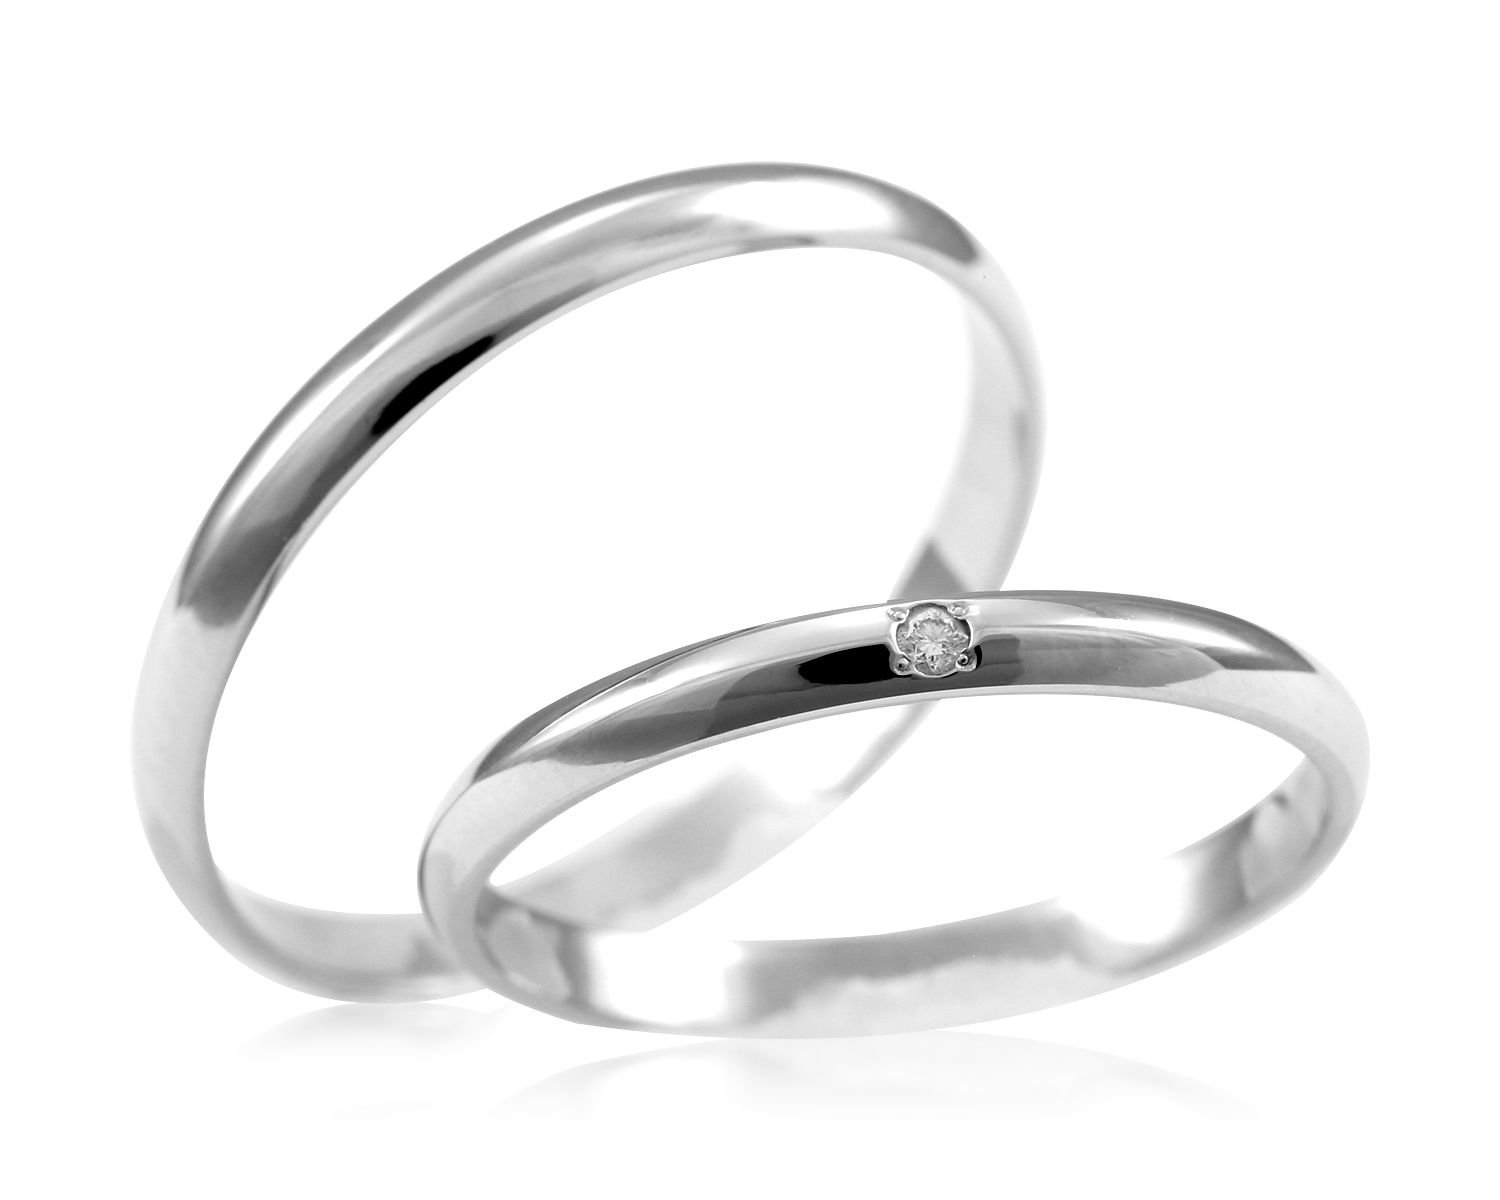 マリッジリング Ml25m Ms24d1l 結婚指輪一覧 大阪 心斎橋のダイヤ入り結婚指輪がお安い 仲庭總本店